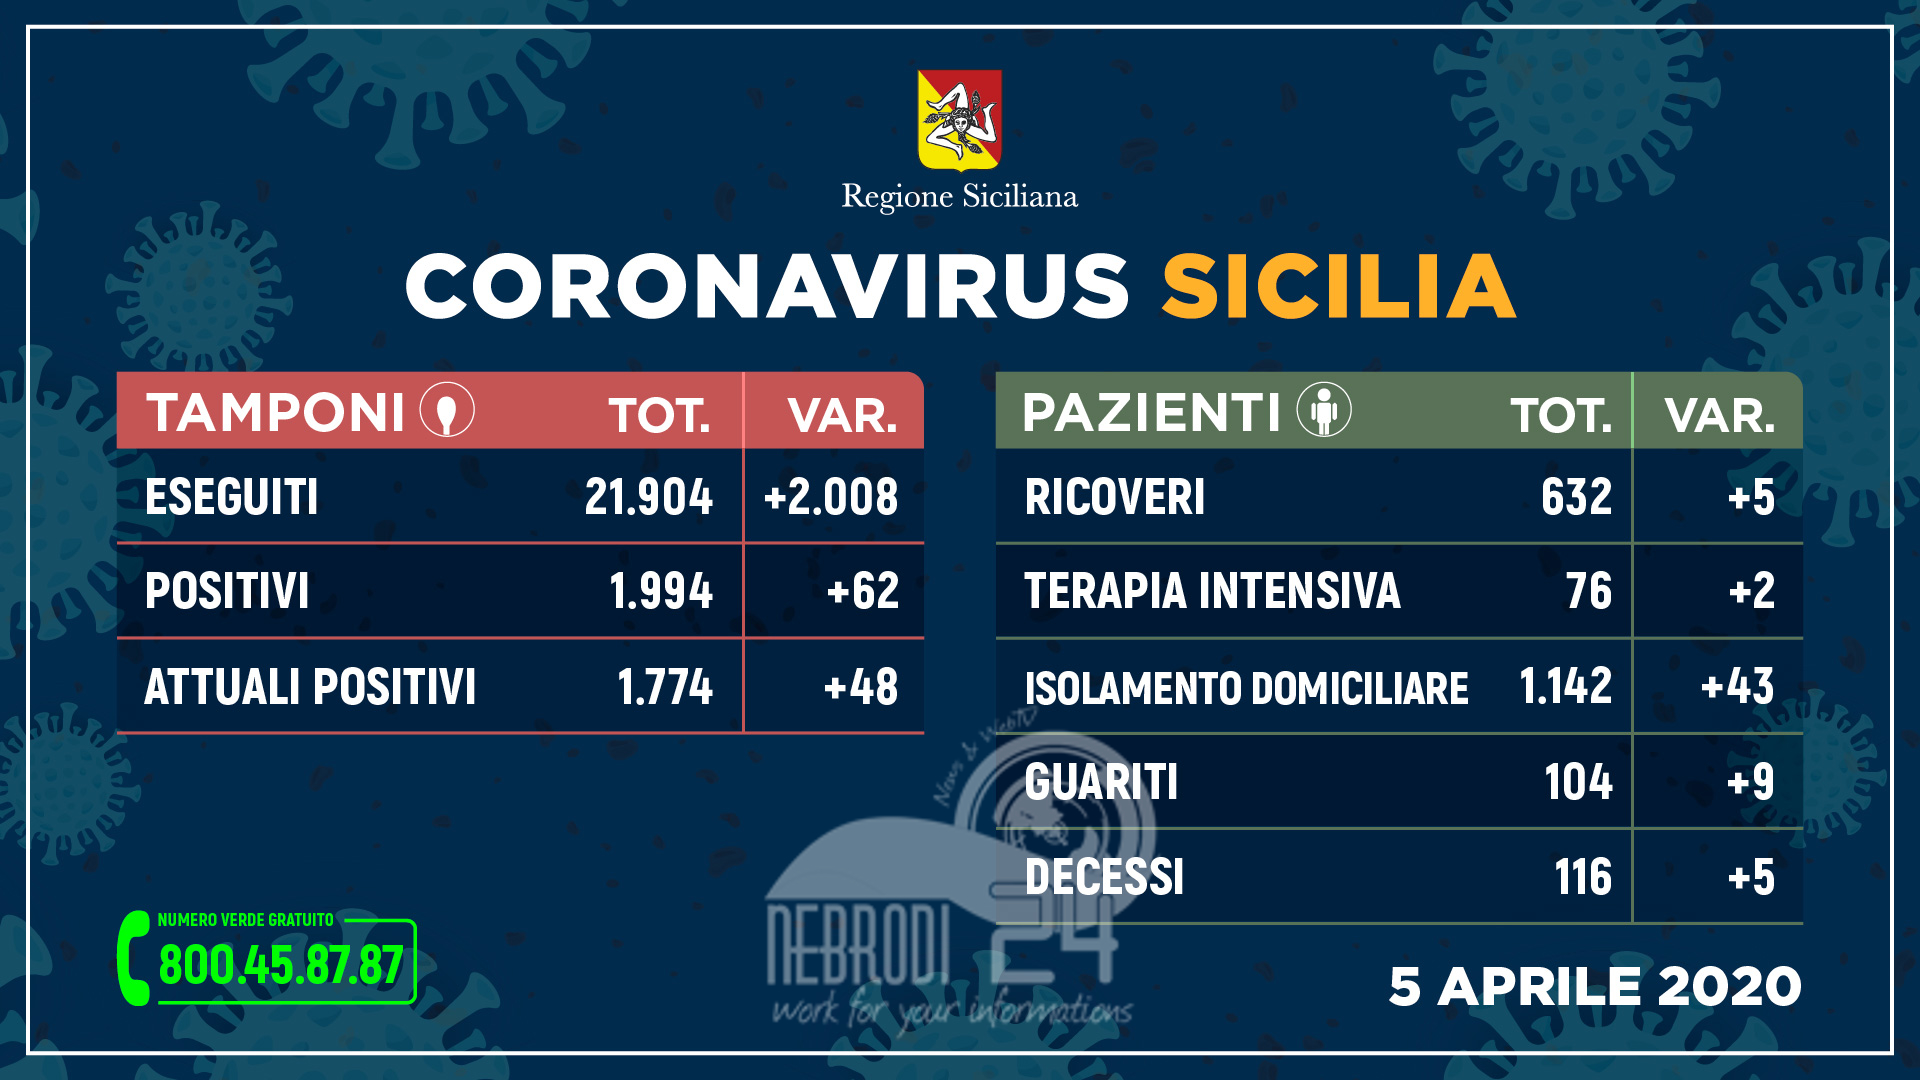 Coronavirus: l’aggiornamento in Sicilia, 1.774 attuali positivi e 104 guariti (+48 rispetto ieri)